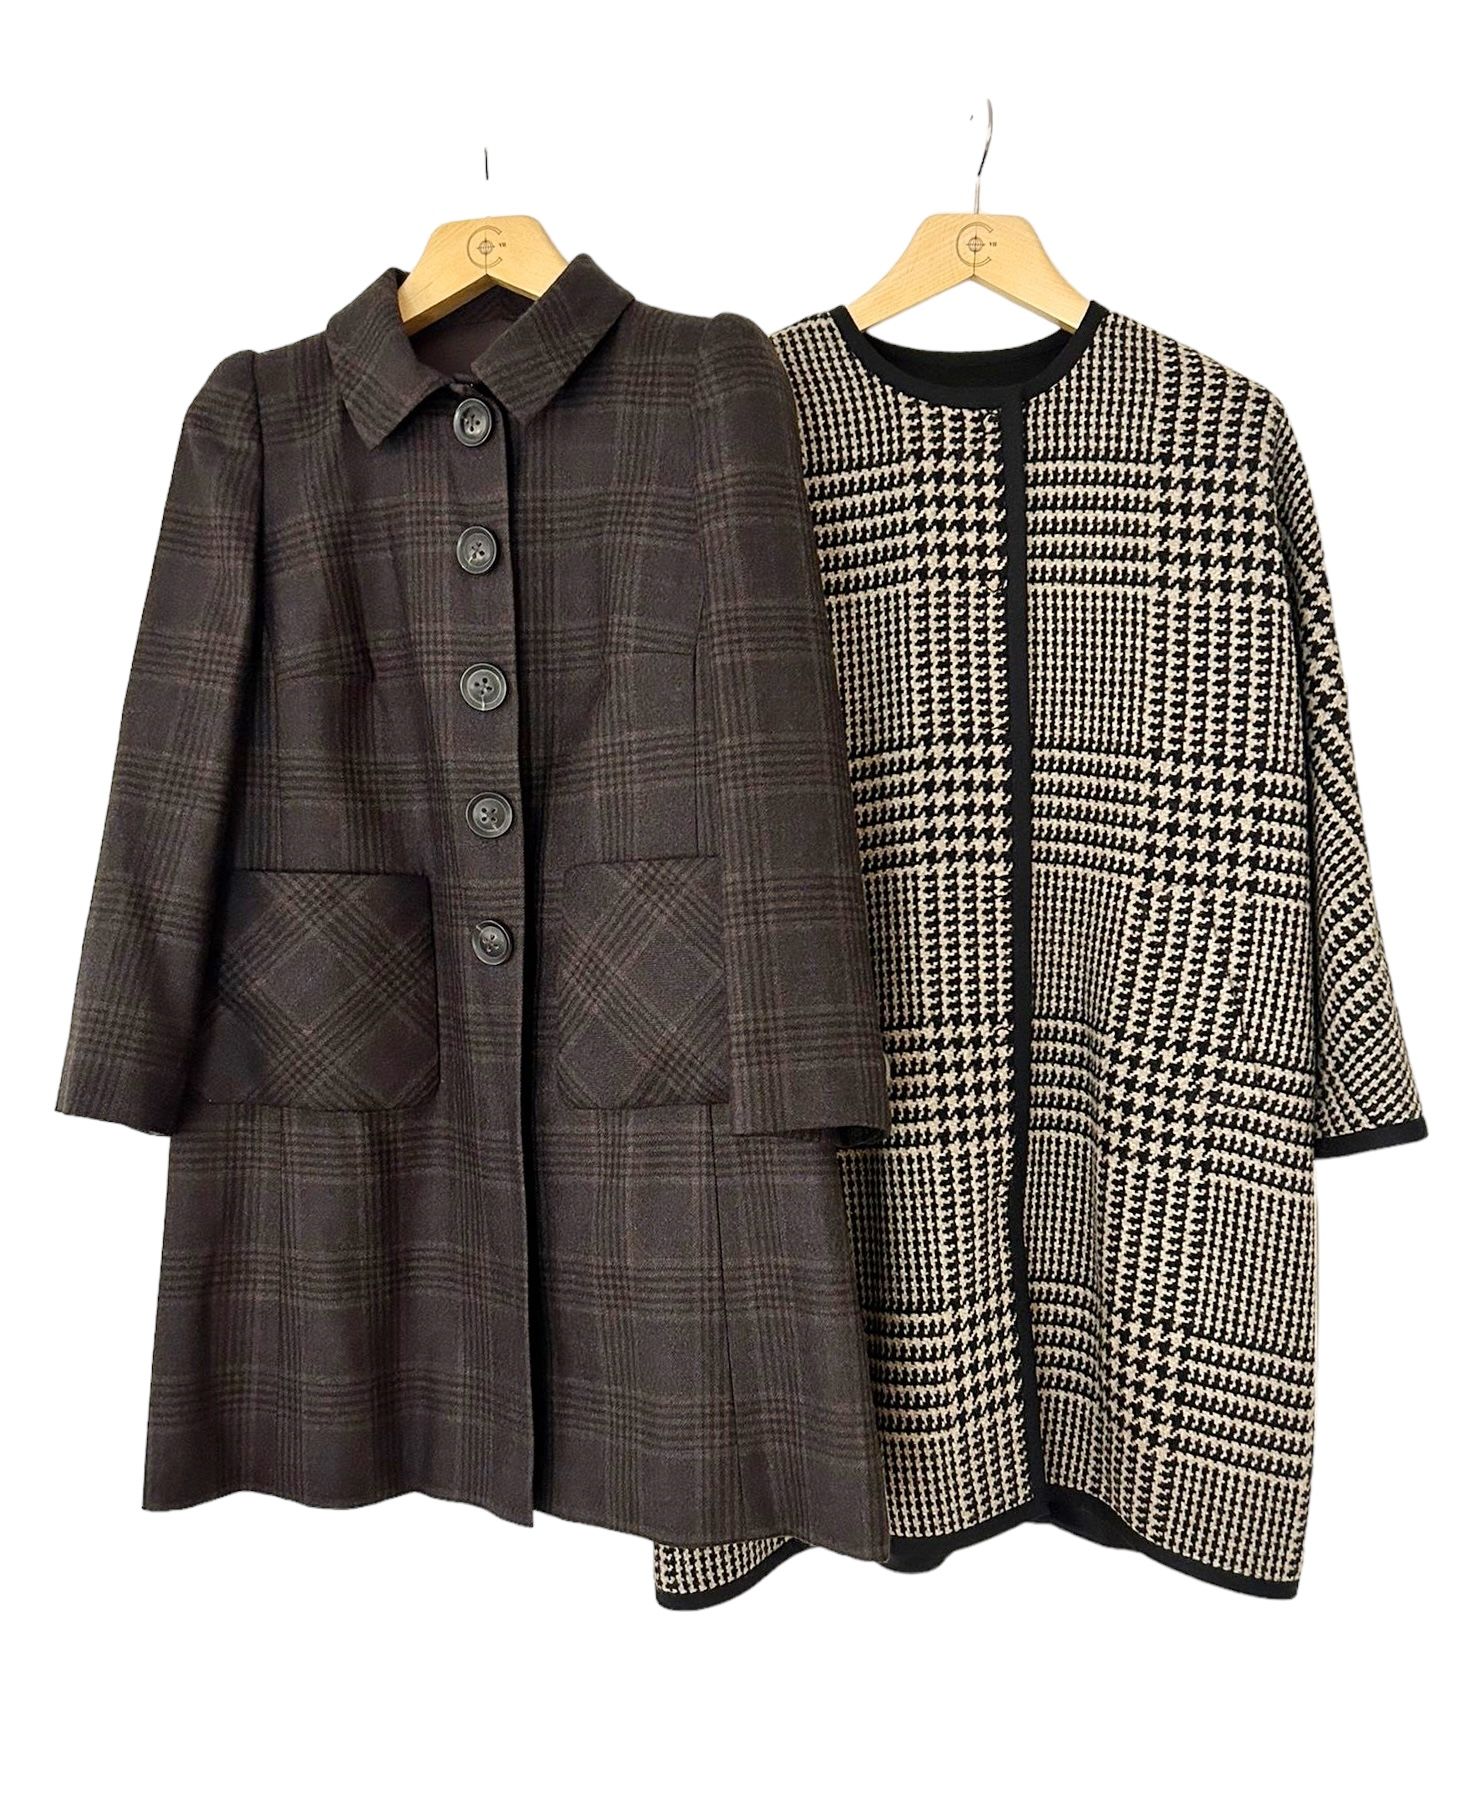 PIO O' KAN Suite de deux manteaux d'hiver
En laine de teinte marron et noir avec&hellip;